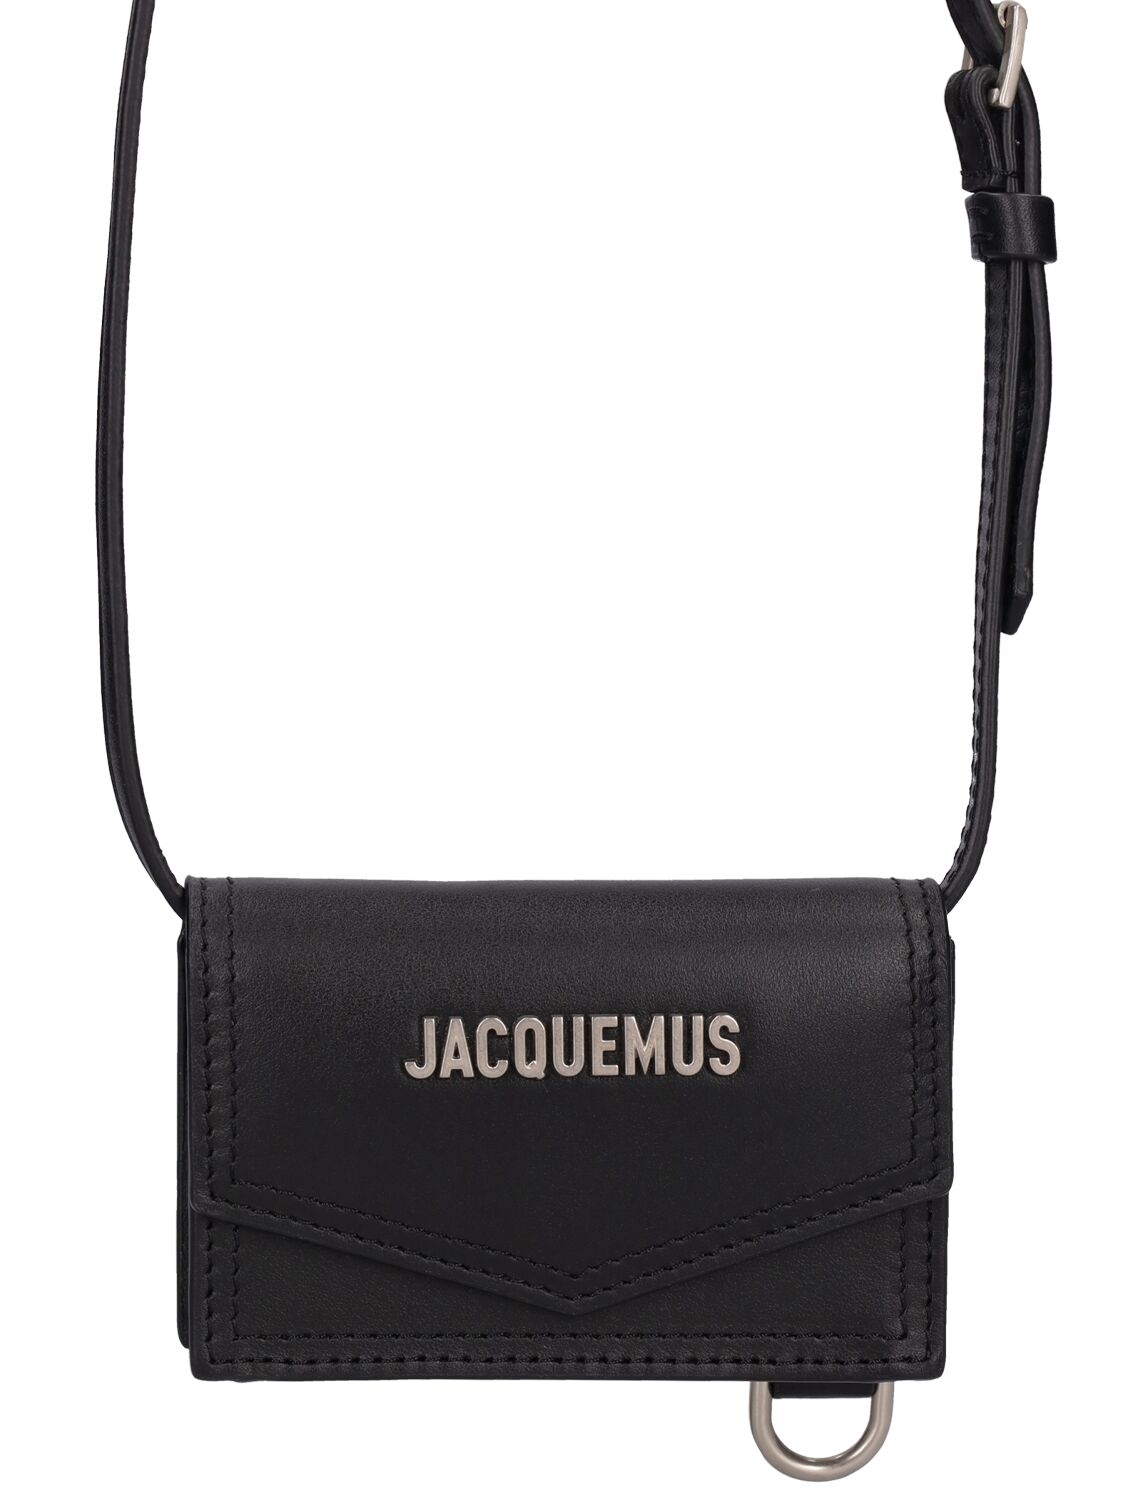 Jacquemus Le Porte Azur皮革钱包 In Black